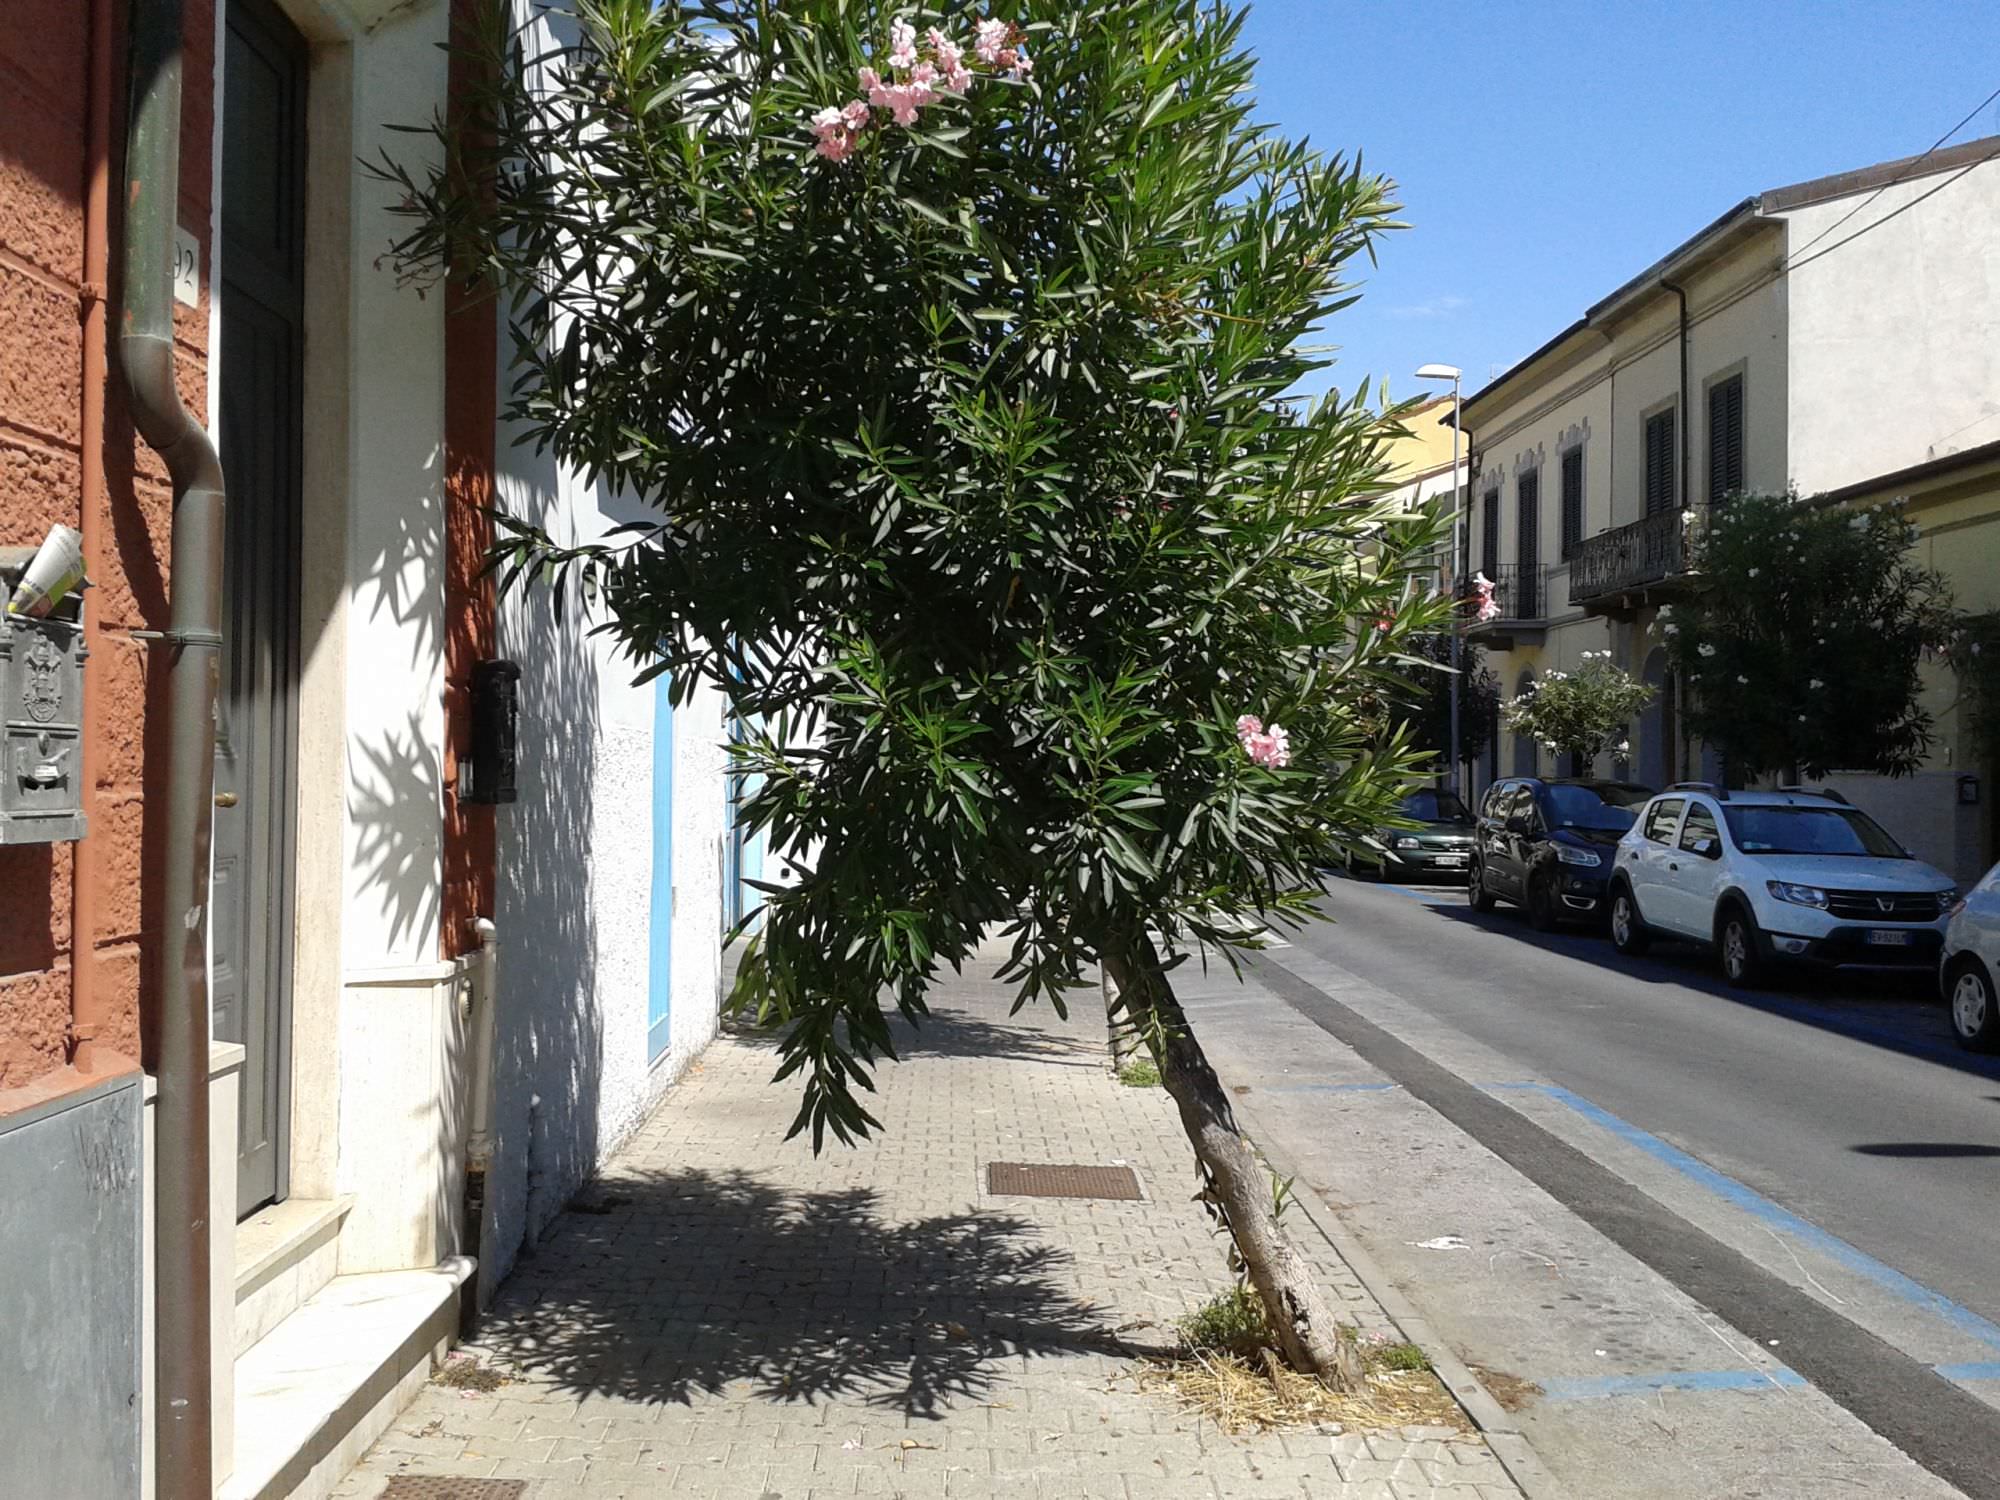 L’albero che “invade” la casa in via Paolo Savi